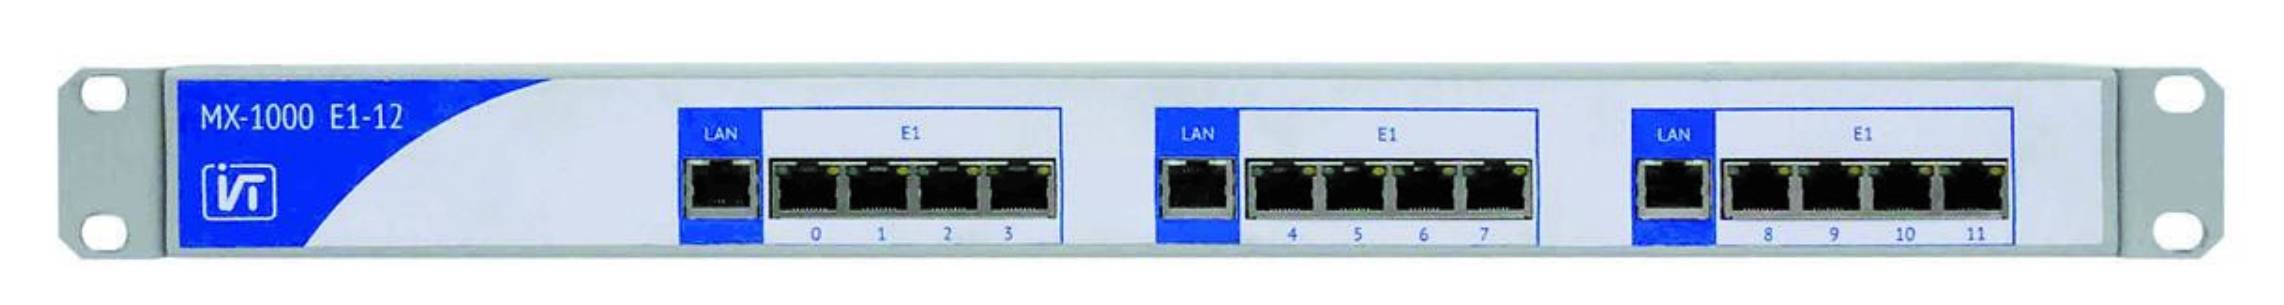 Шлюз цифровых интерфейсов MX-1000-Е1-4 (4 интерфейса E1), MX-1000-Е1-8 (8 интерфейсов E1), MX-1000-Е1-12 (12 интерфейсов E1)